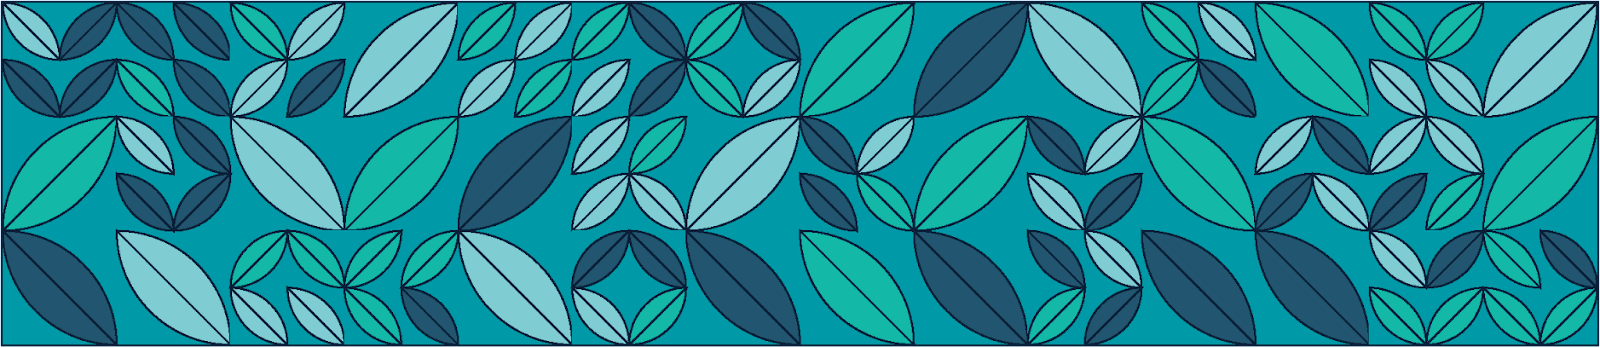 illustration of a leaf pattern